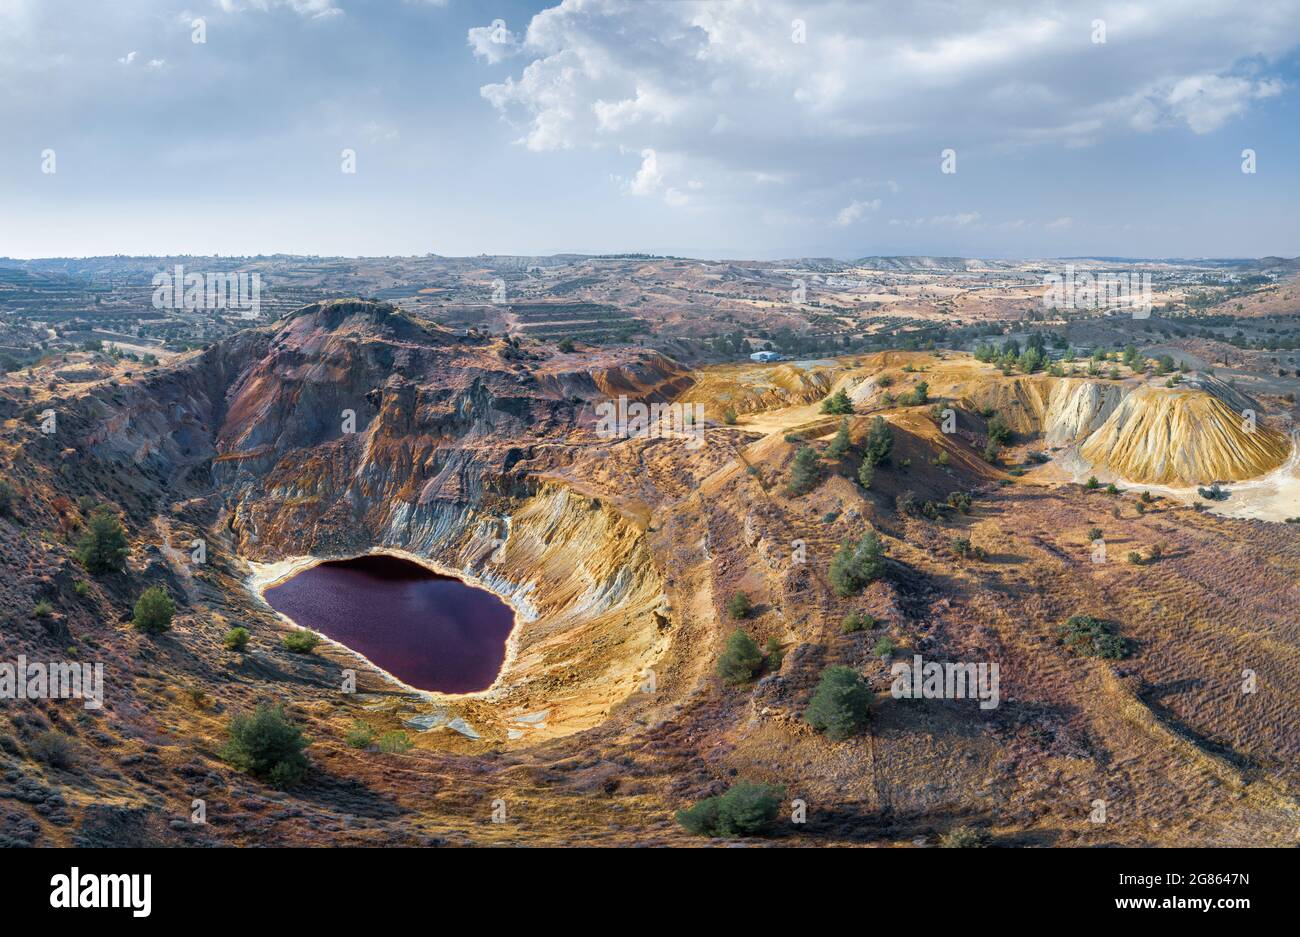 Lac toxique dans une mine de cuivre à ciel ouvert abandonnée et des tas de déchets près de Kampia, Chypre. Panorama aérien Banque D'Images